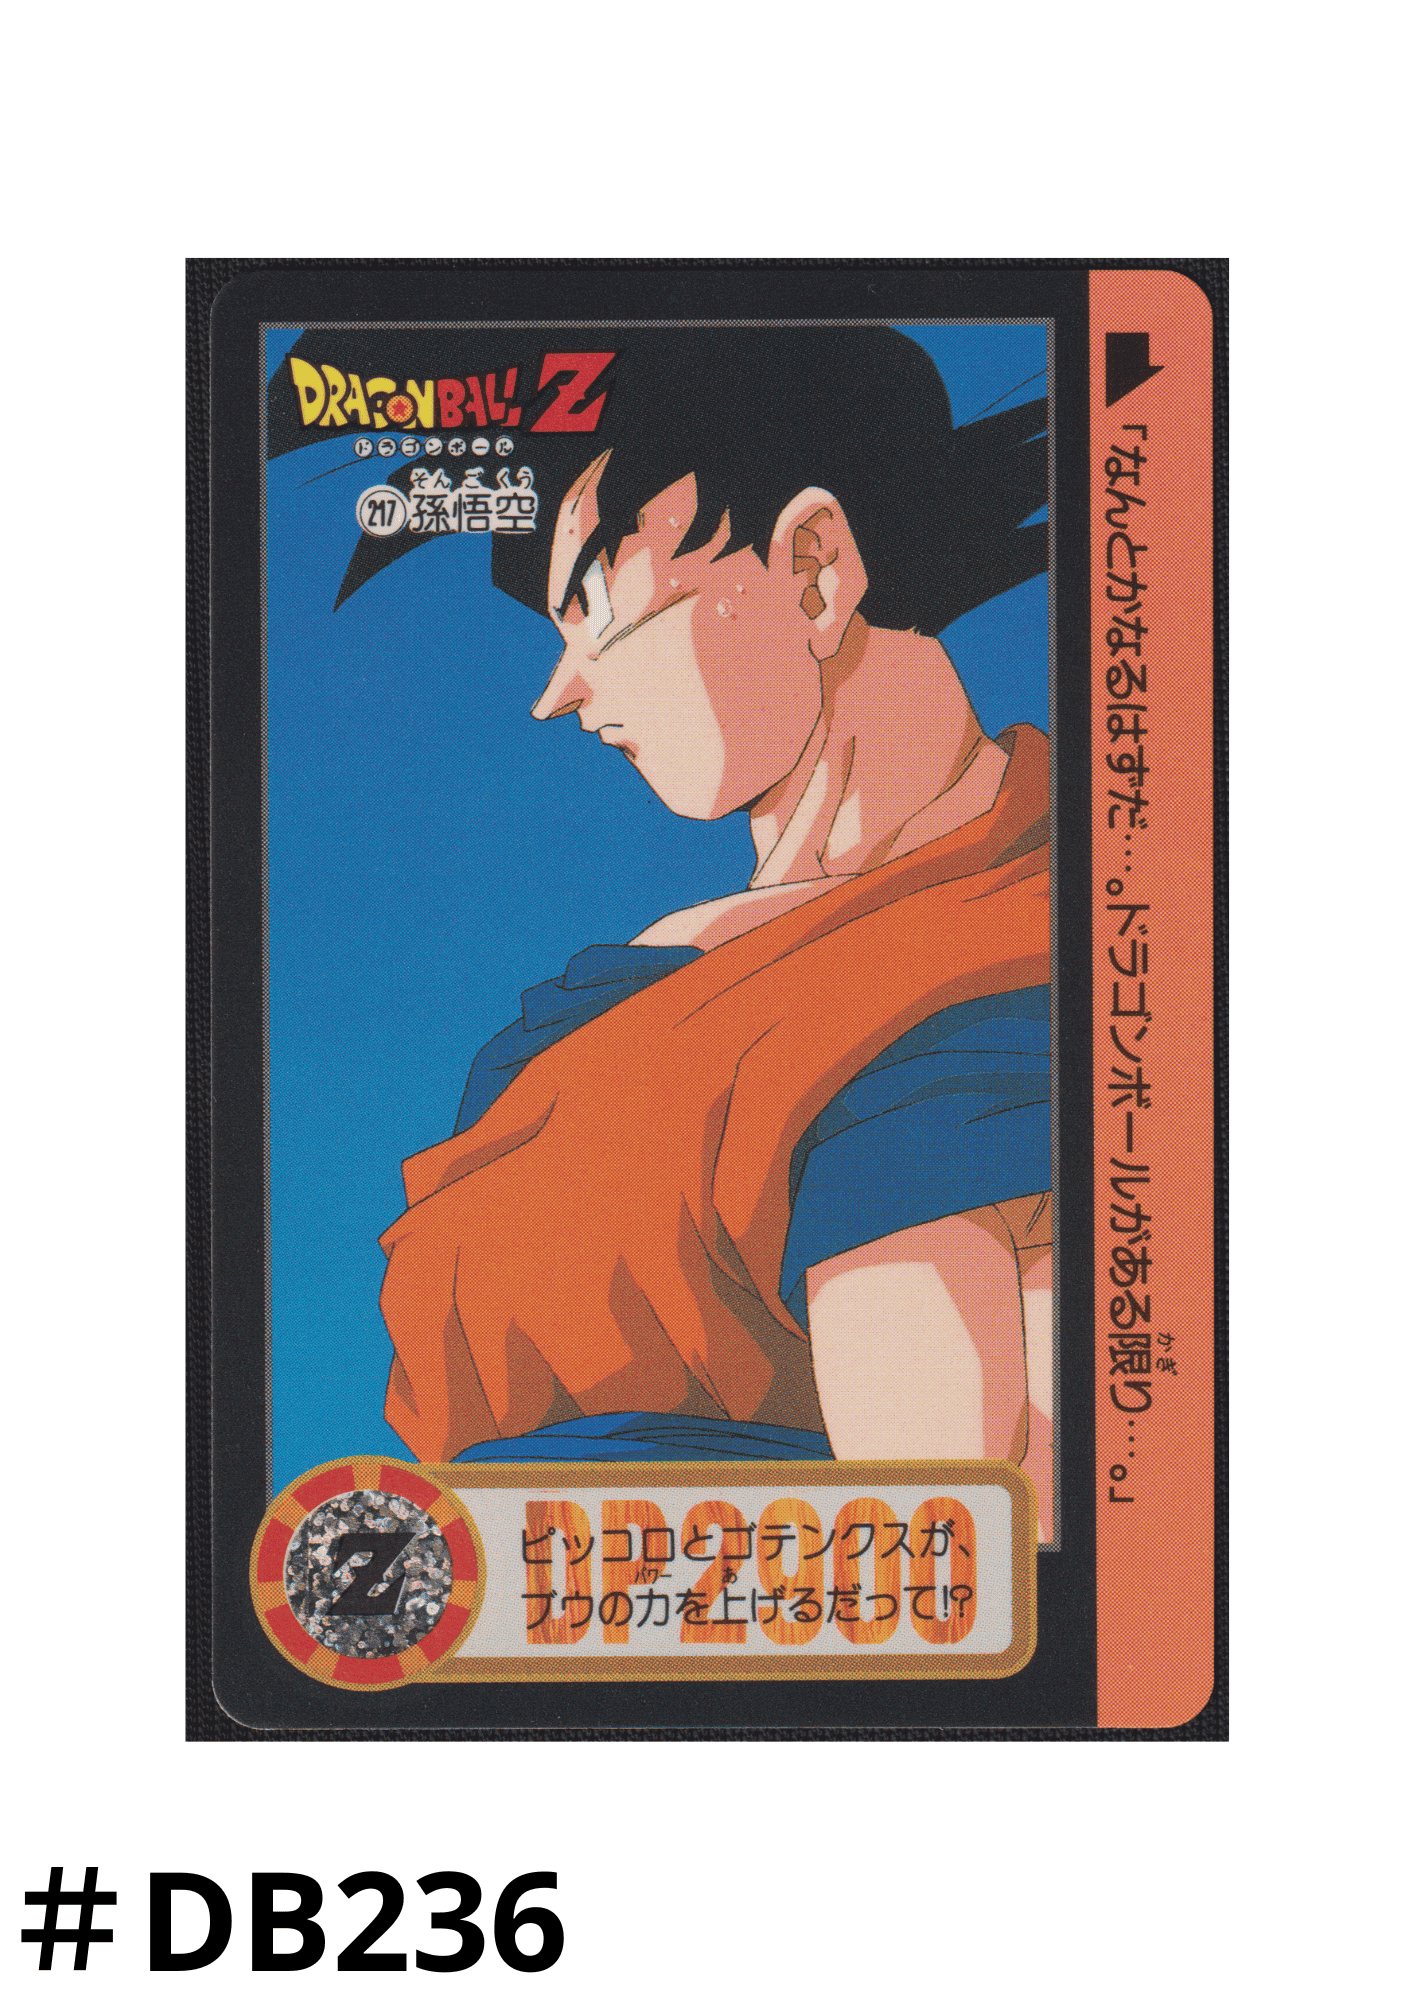 Goku No.217 | Carddass Hondan ChitoroShop